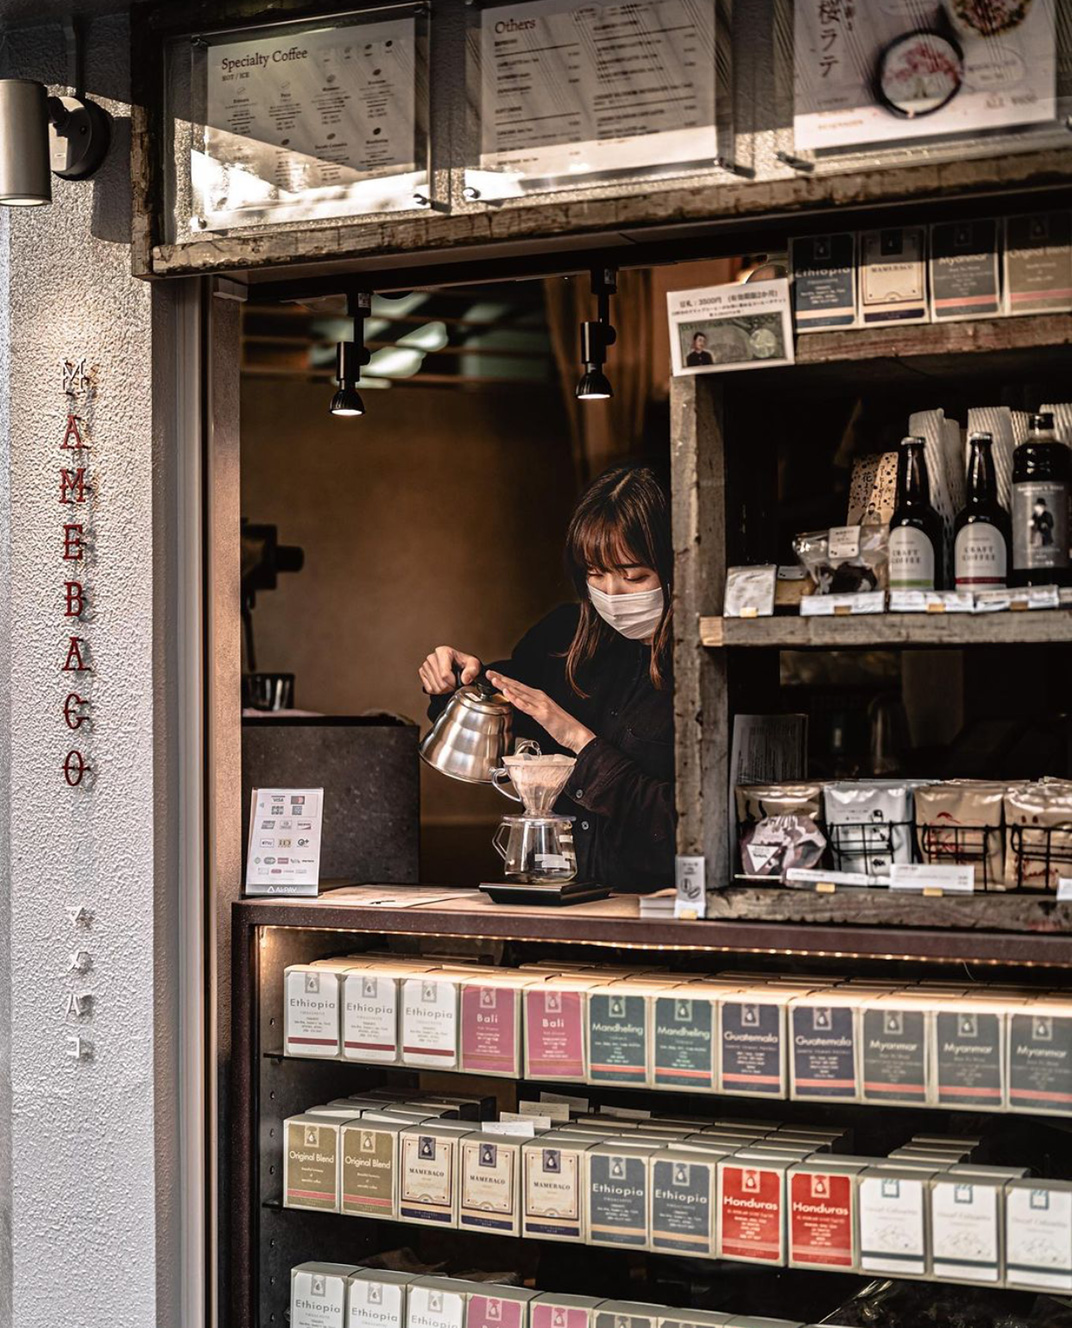 橱窗式咖啡店Mamebaco 日本 东京 上海 咖啡店 橱窗 复古 档口 logo设计 vi设计 空间设计